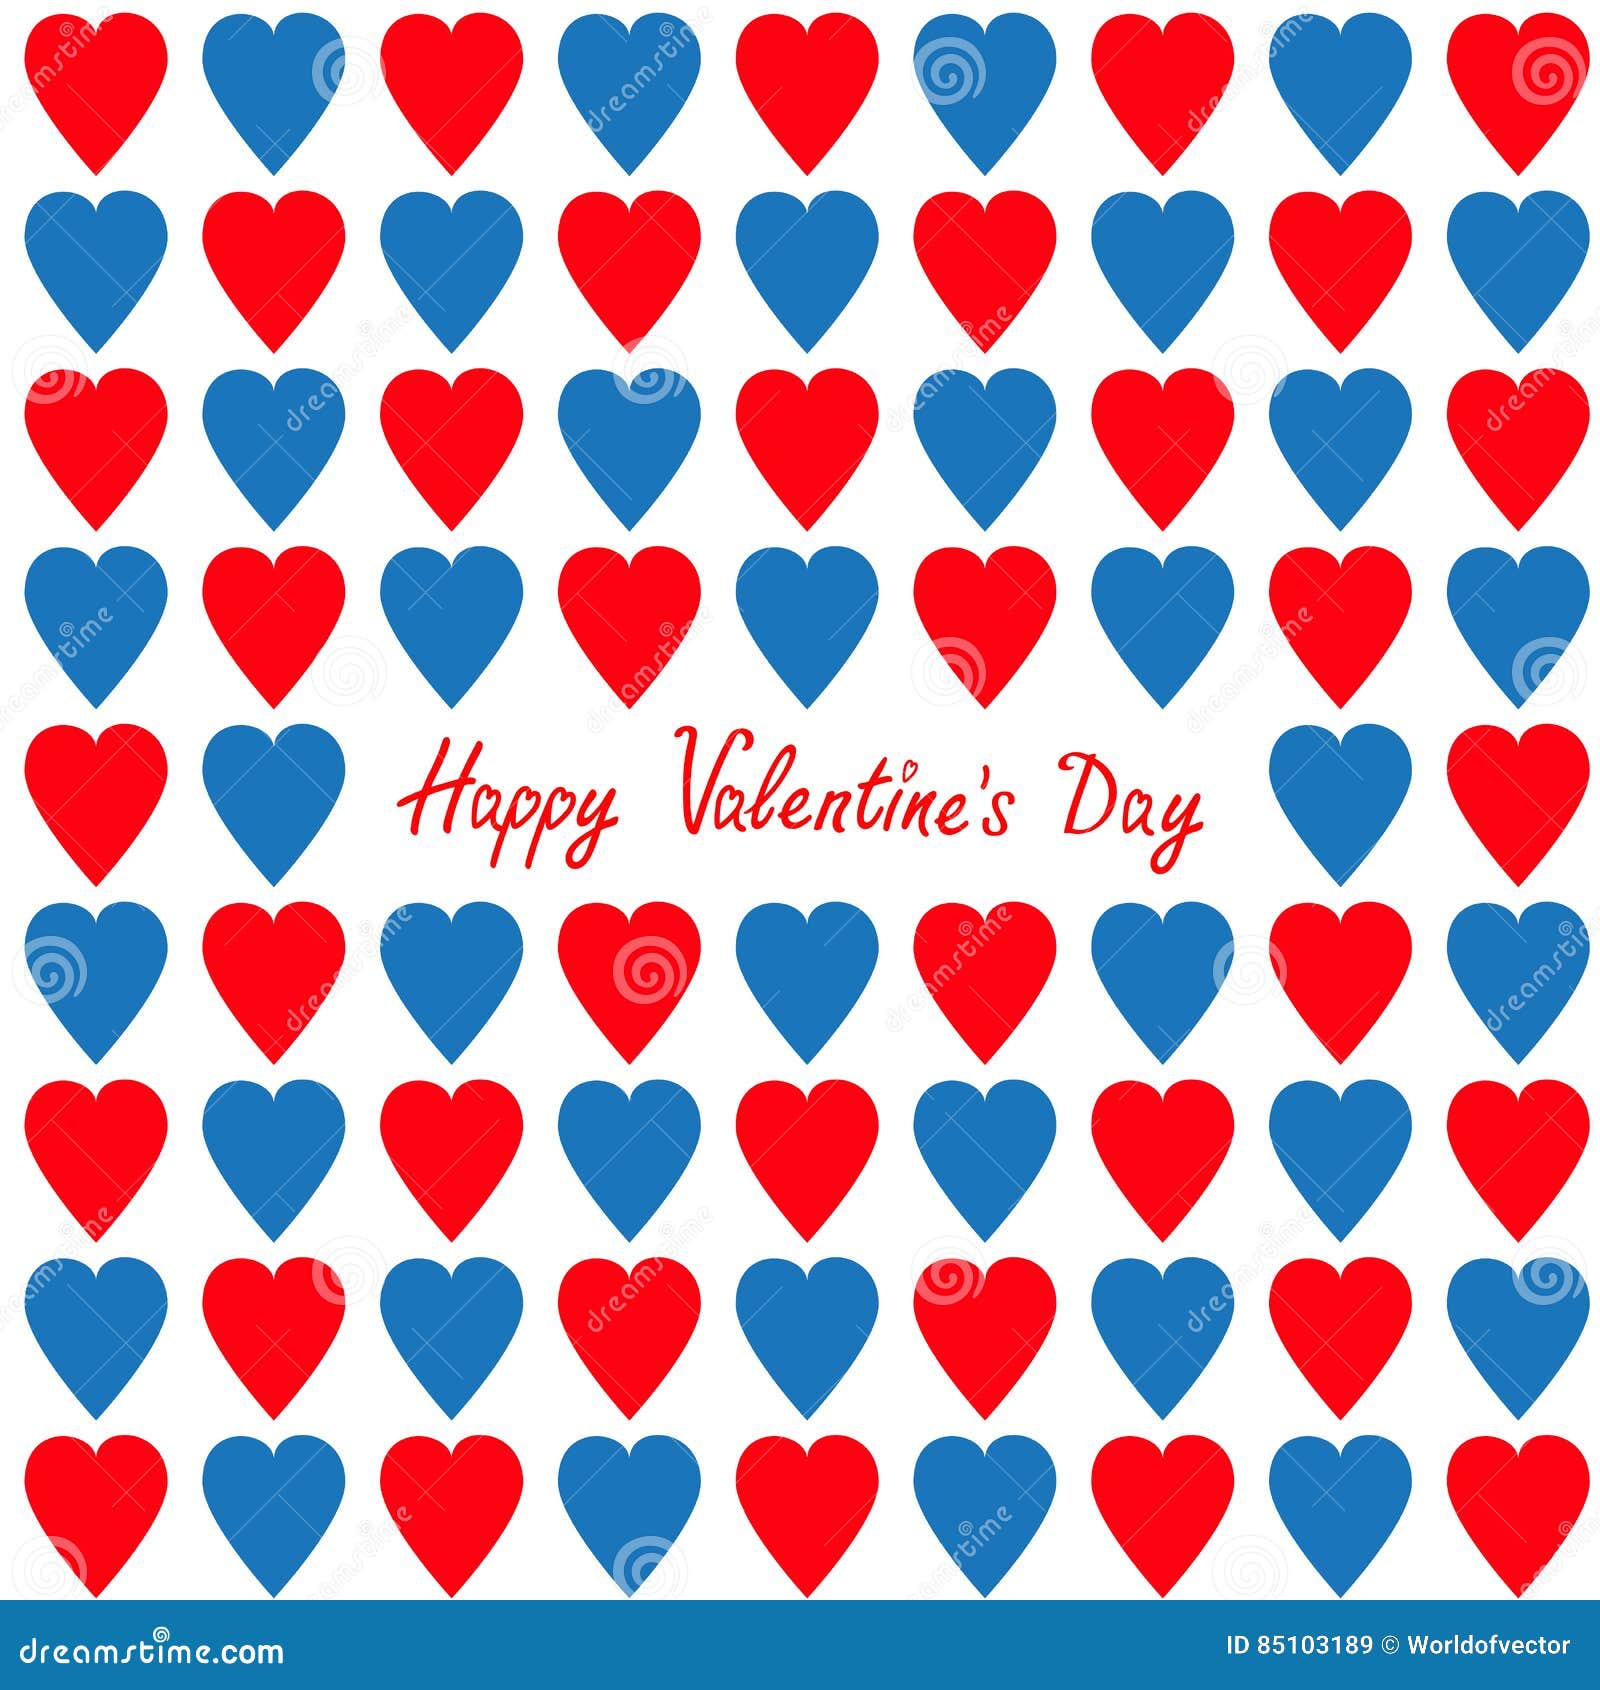 Ngày Valentine, ngày của tình yêu và lòng trắc ẩn. Hãy để chúng tôi giúp bạn tìm một hình ảnh tuyệt vời để tặng người thương của bạn vào dịp này.